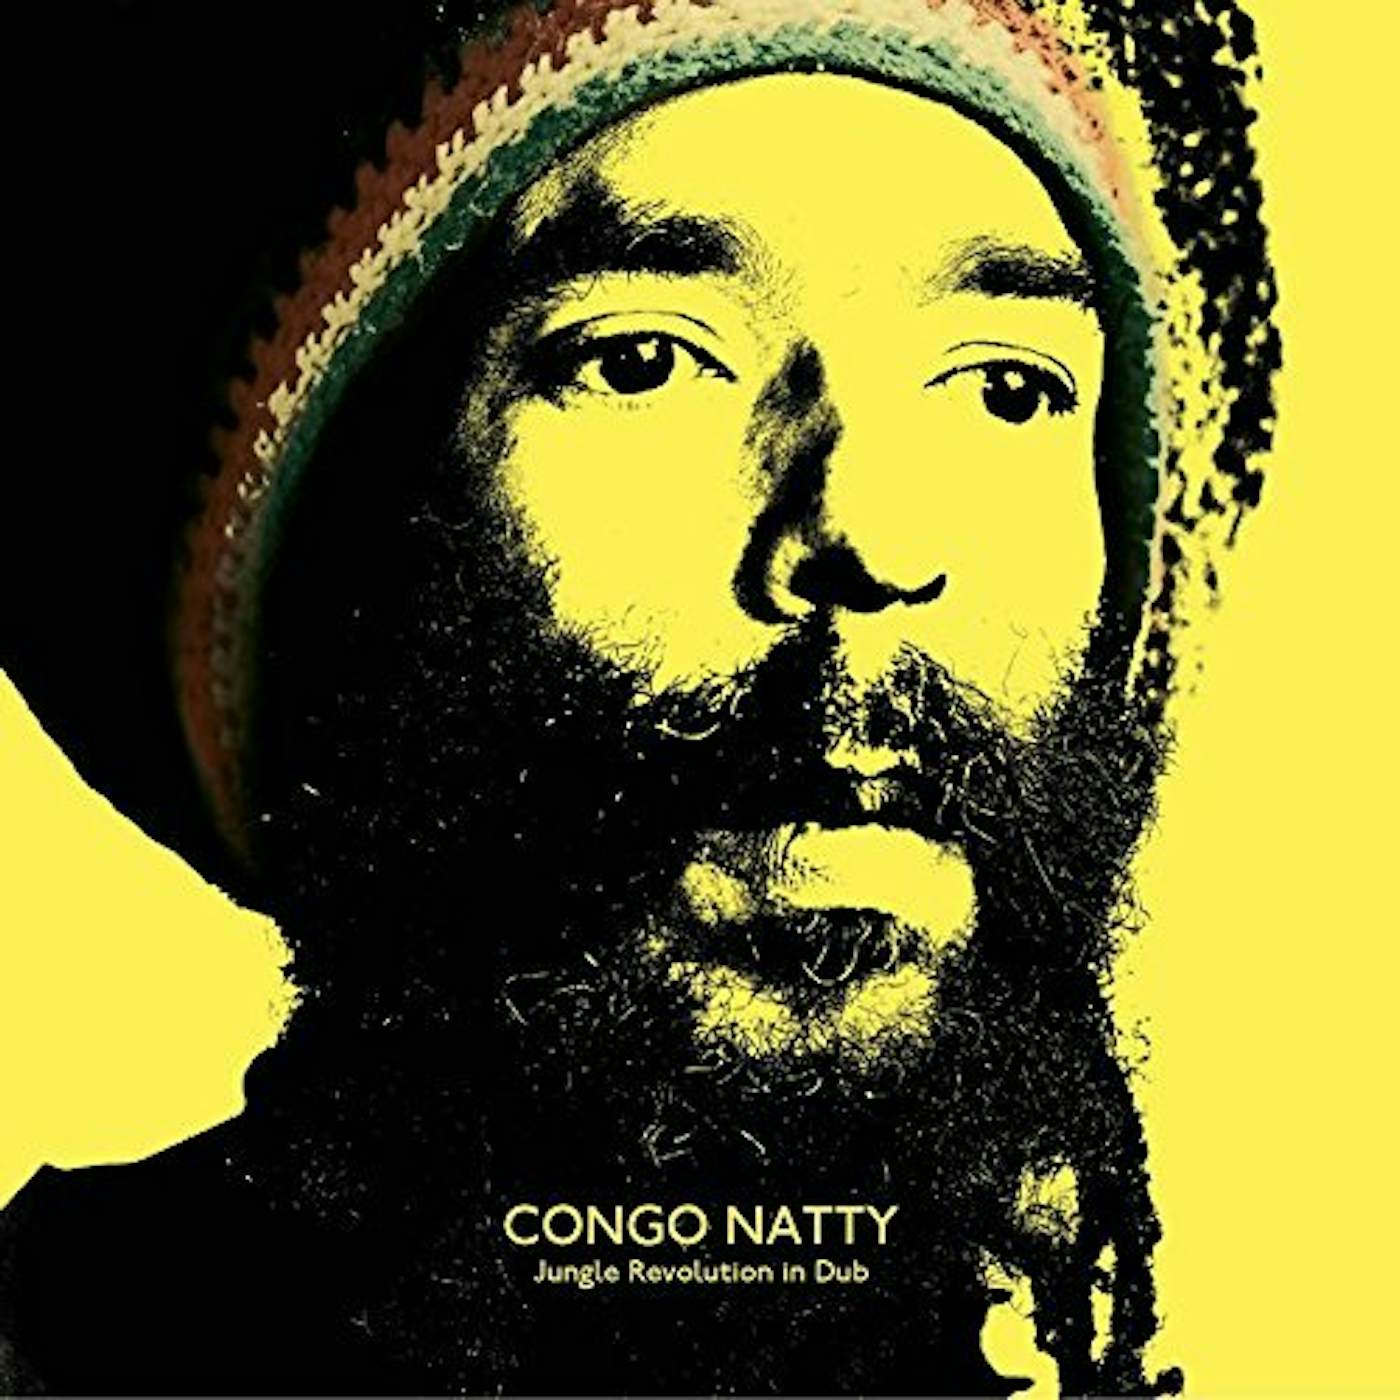 Congo Natty Jungle Revolution in Dub Vinyl Record